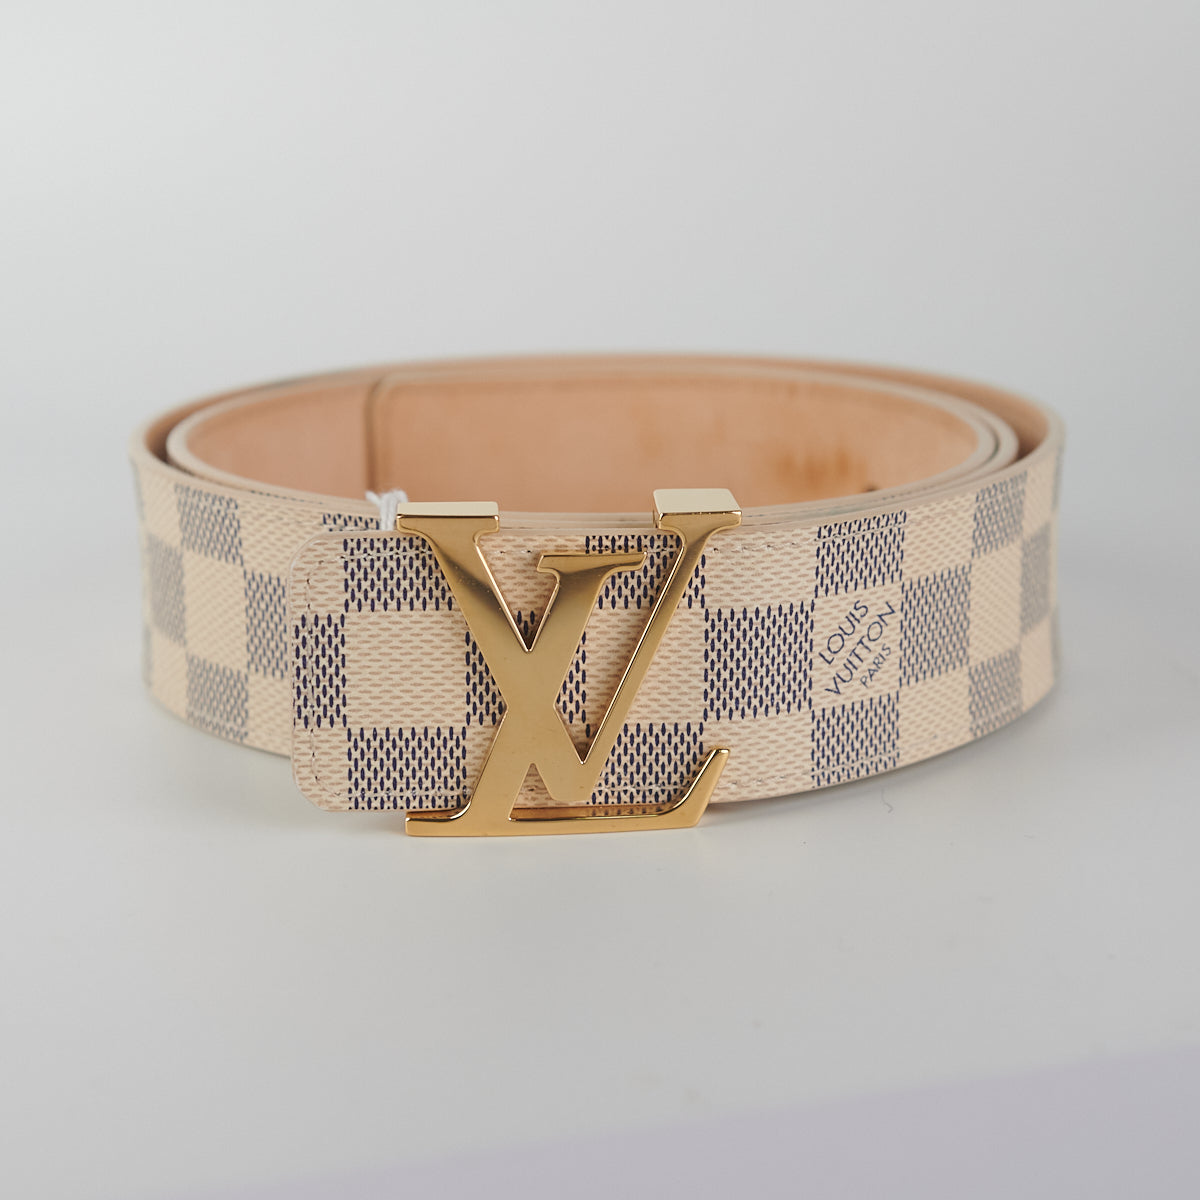 Louis Vuitton Belt Damier Azur - Size 100 - THE PURSE AFFAIR